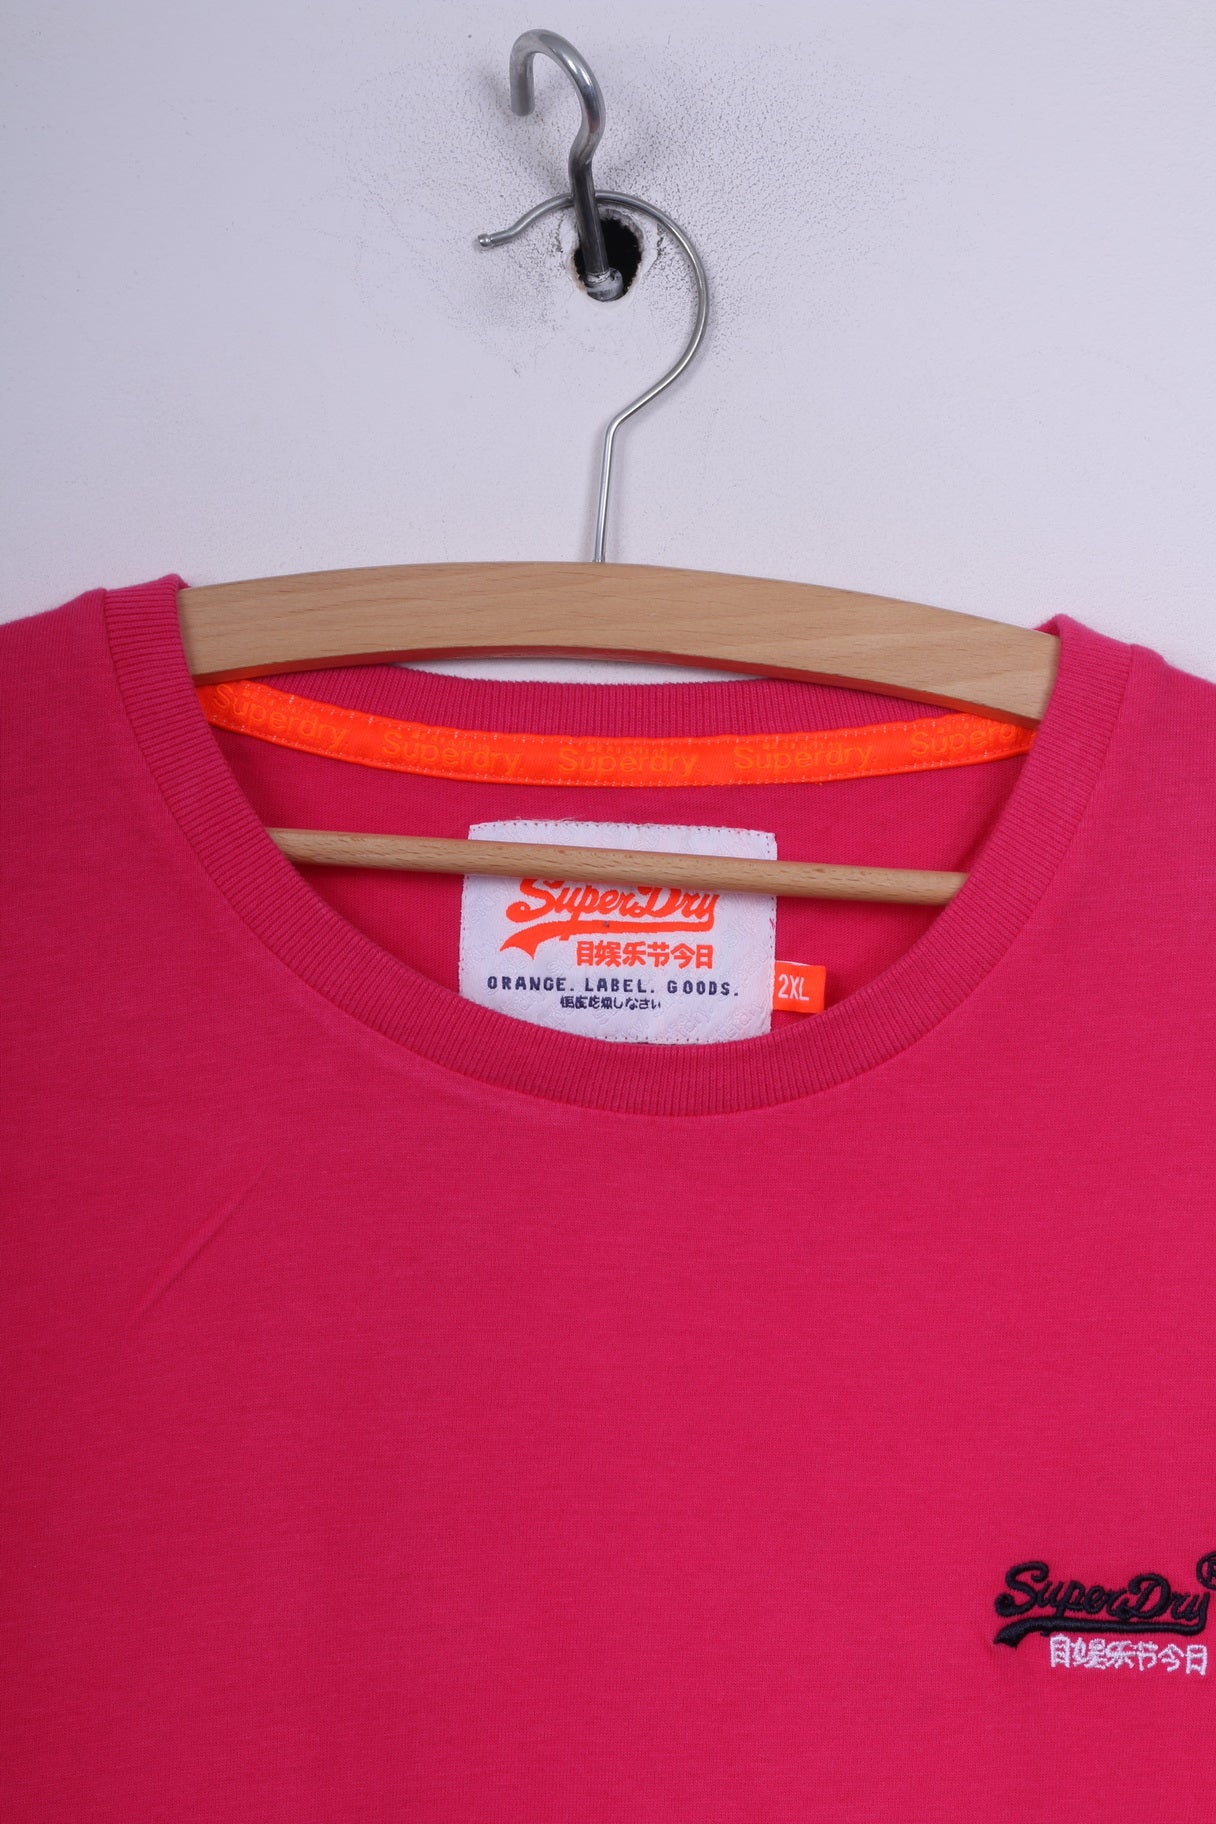 T-shirt da uomo Superdry 2XL (XL) in cotone rosa con etichetta arancione e logo 